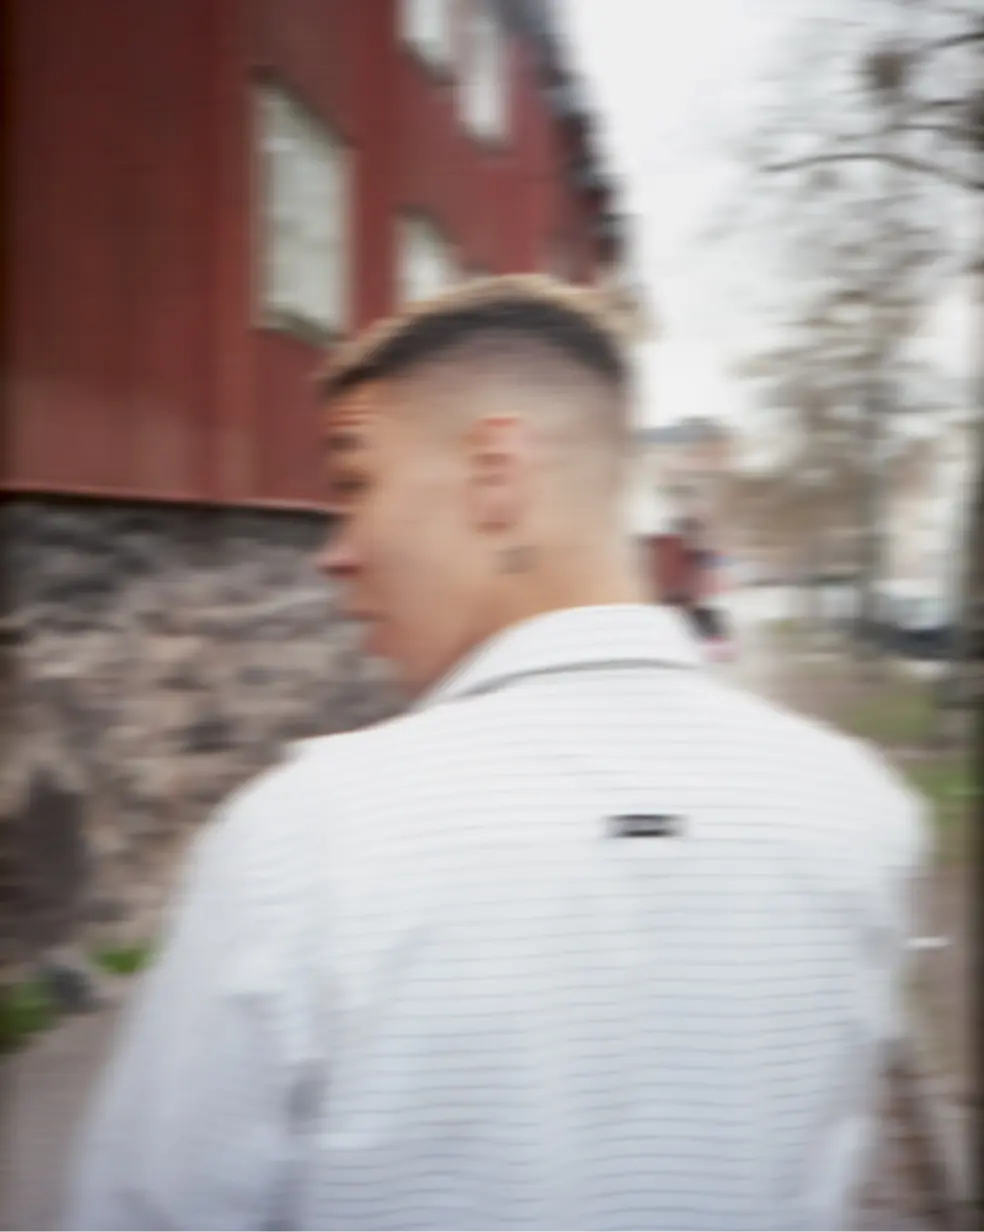 Imagem borrada de uma pessoa andando de costas para a câmera, vestida com roupas brancas. A cabeça da pessoa está inclinada para trás.